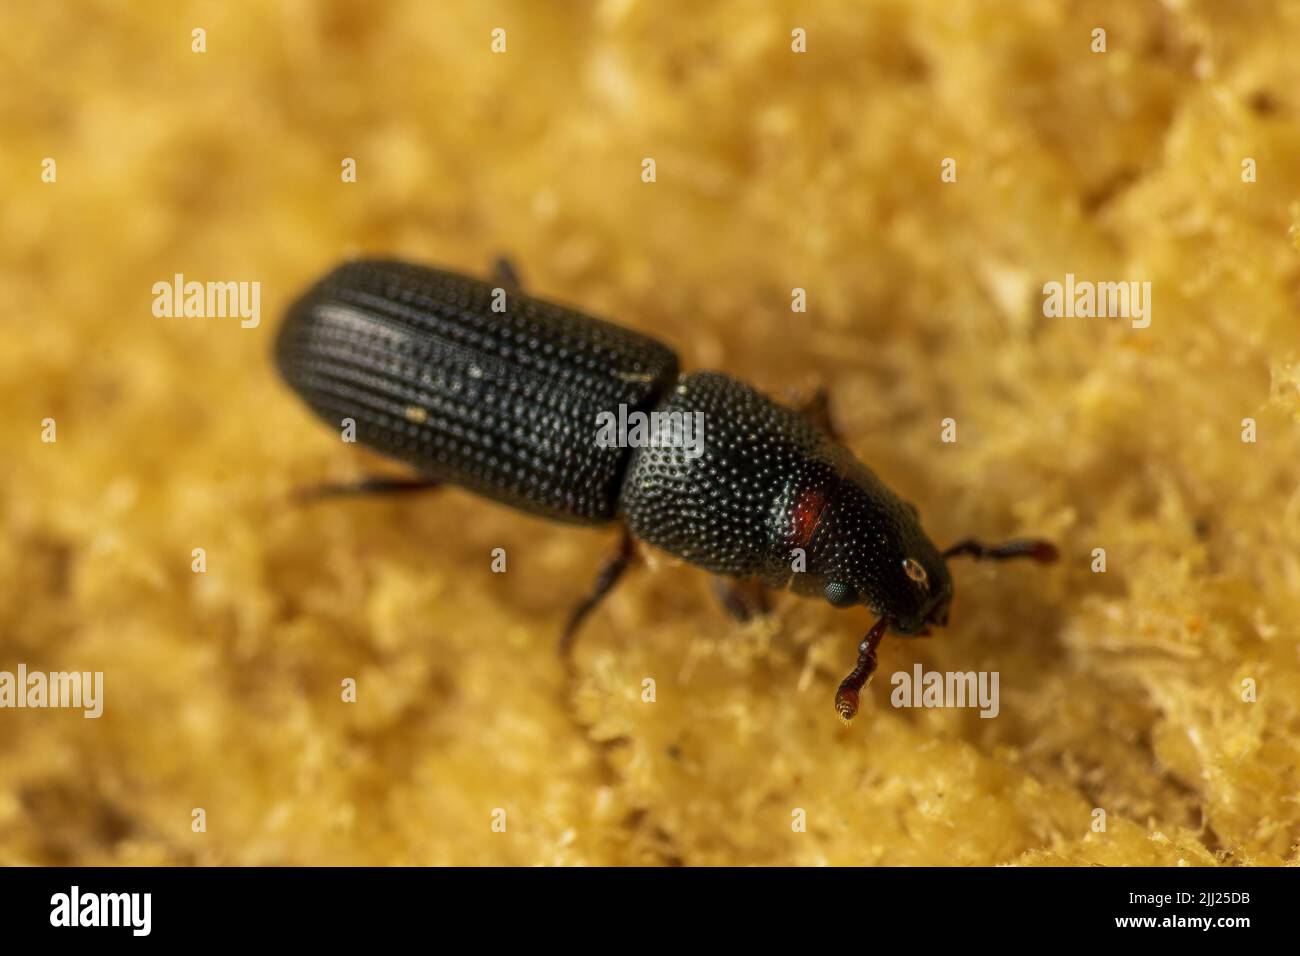 Makroaufnahme des schwarzen Kiefernrindenkäfer- Hylastes ater ist eine Käferart in der Familie Curculionidae, Schädling von Nadelbäumen, verschwommener gelber Hintergrund Stockfoto